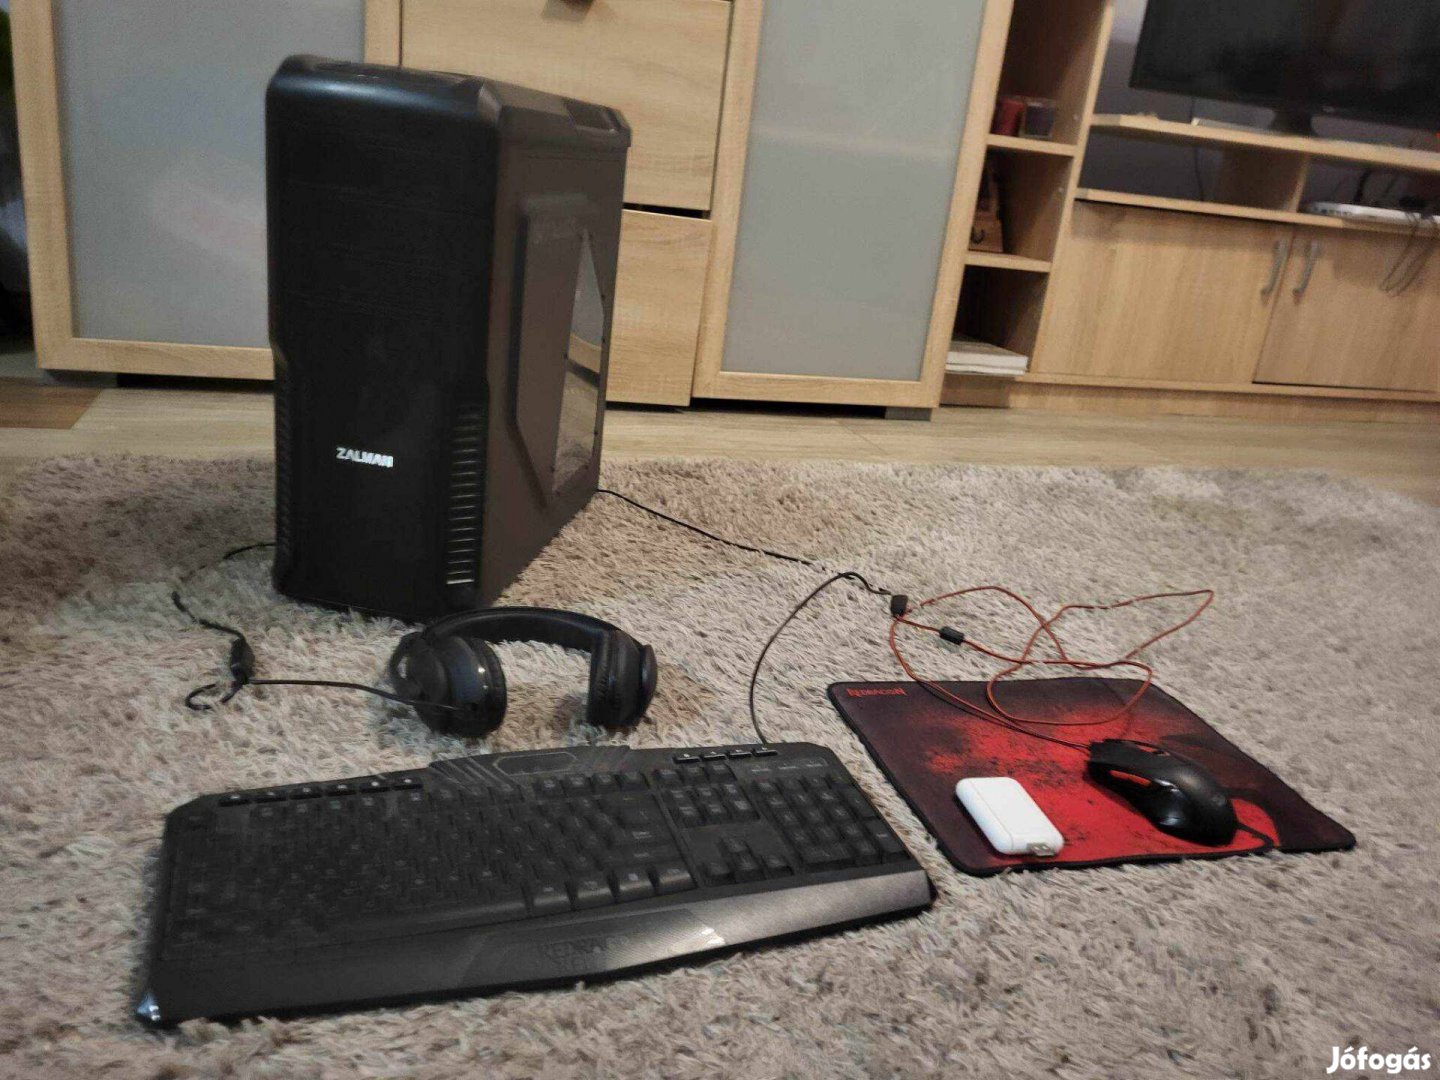 Keresek: Zalman Z3 plusz számítógép, redragon egérpad, billentyűzet és egér